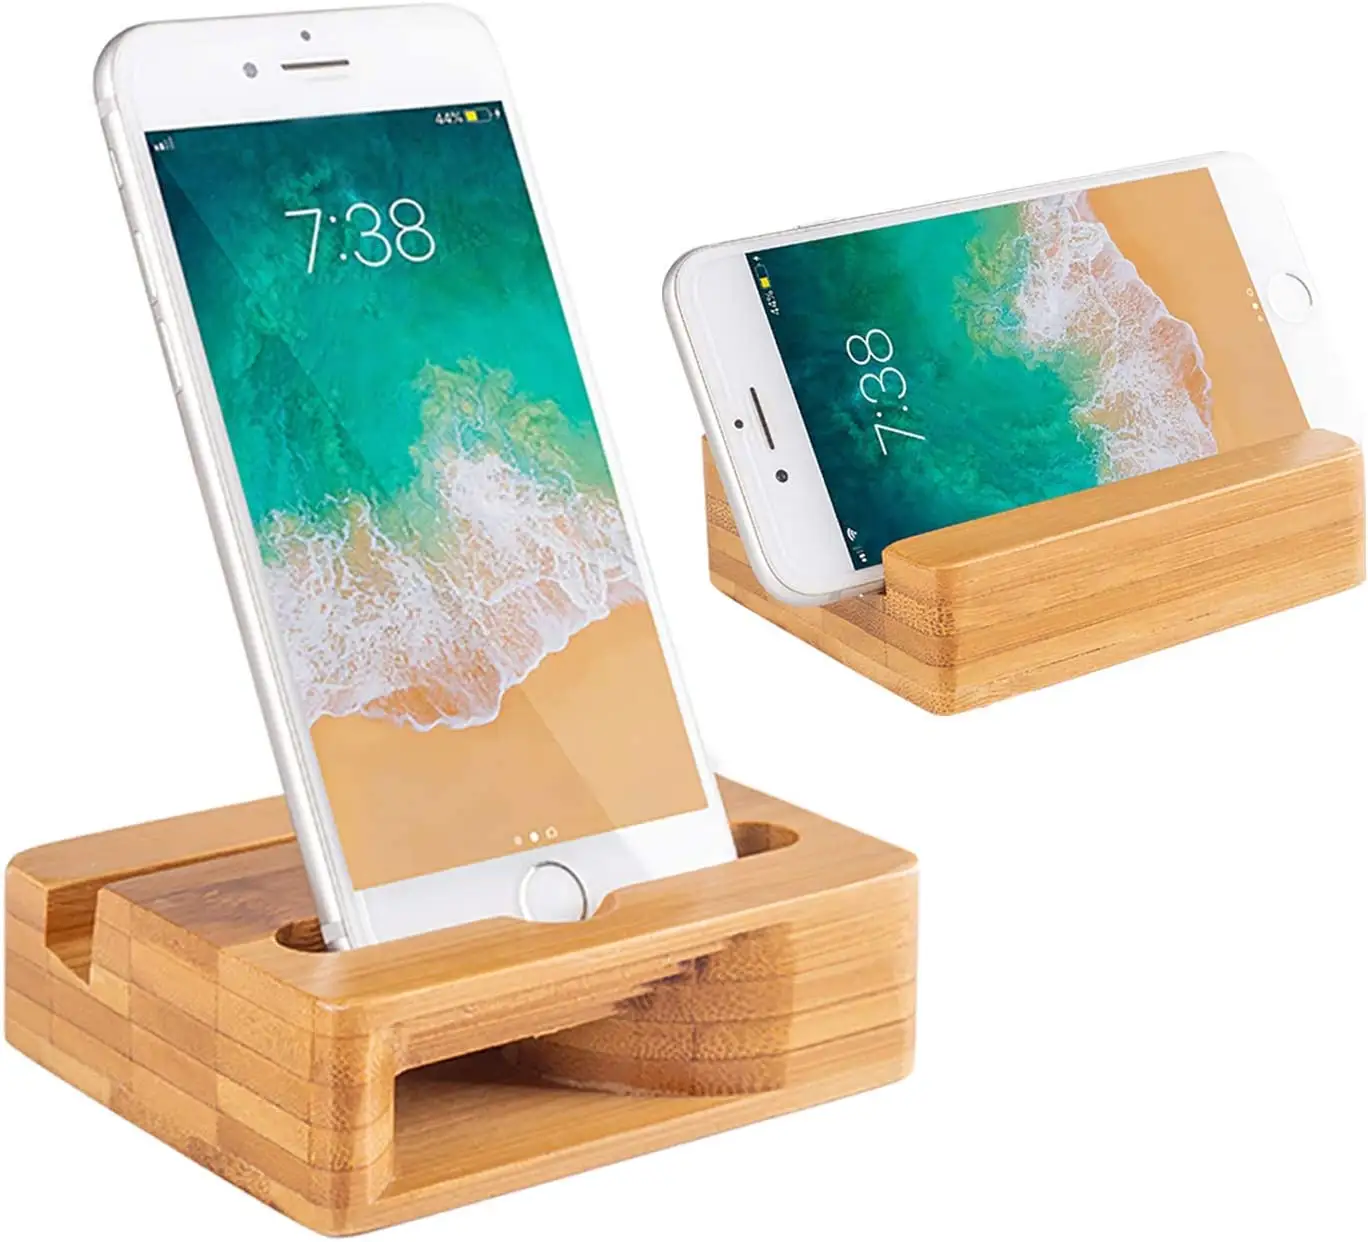 מעמד לטלפון סלולרי מעץ במבוק מחזיק טאבלט שולחני לטלפון אייפד